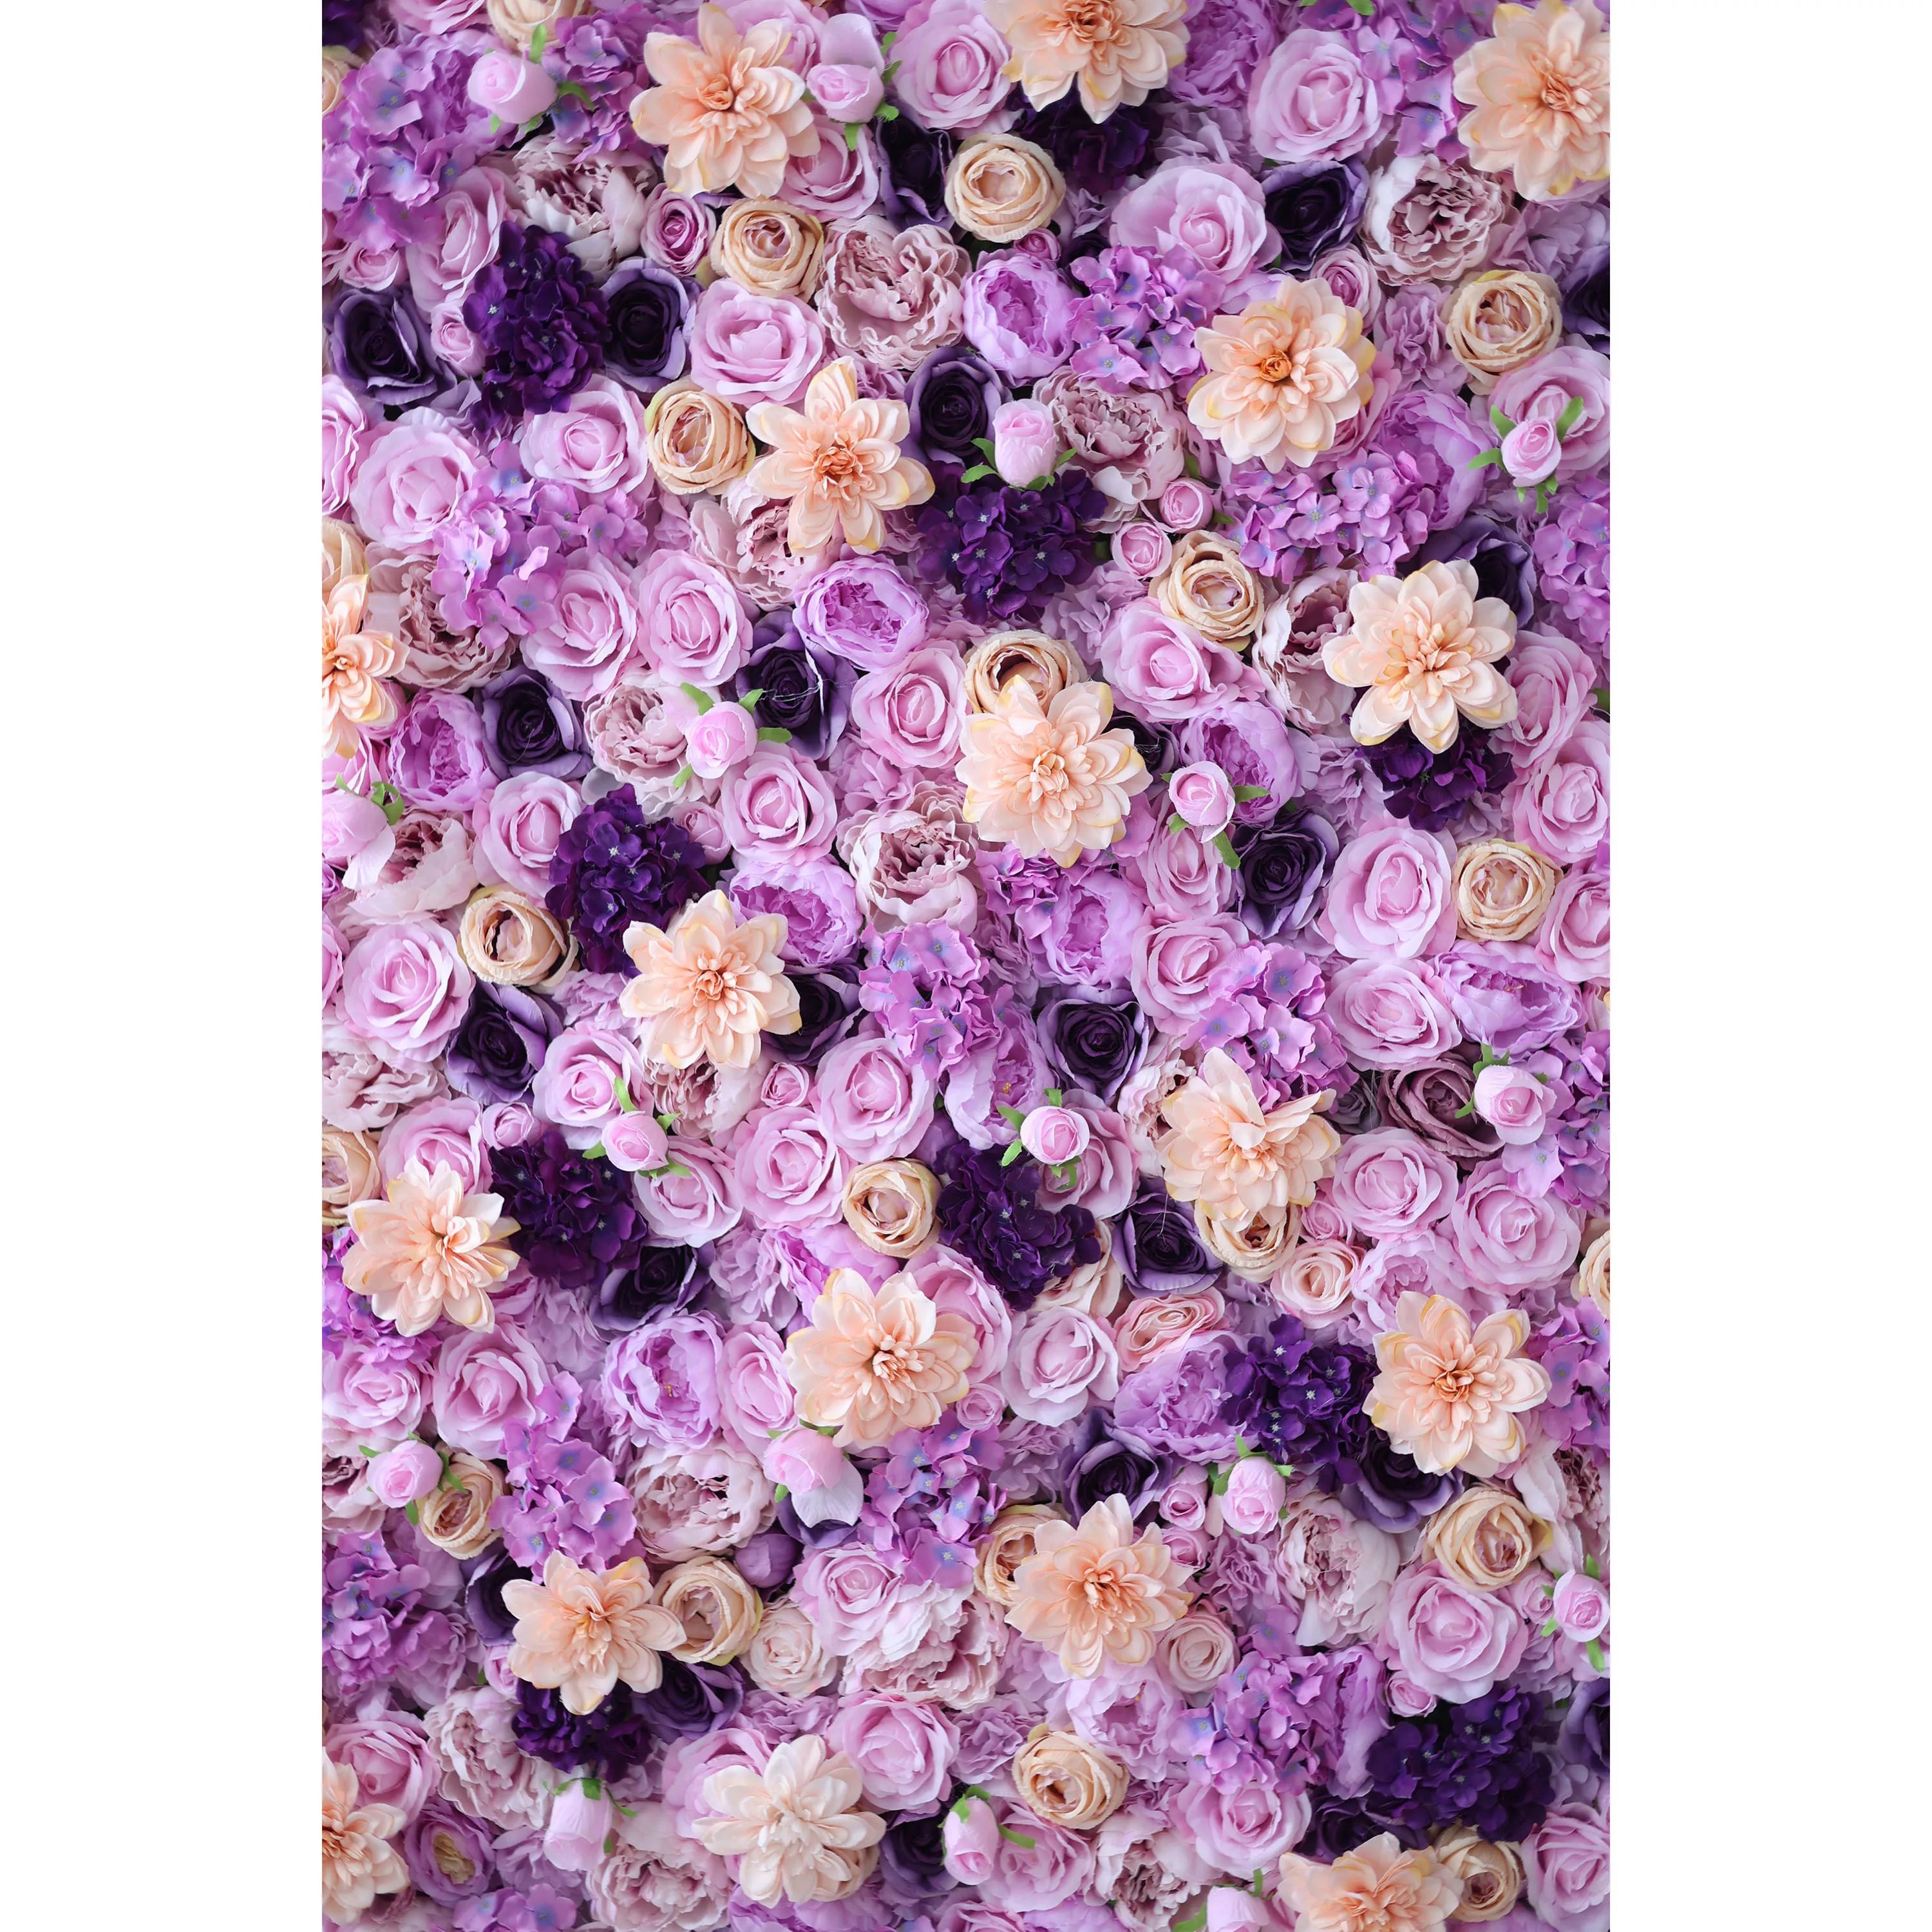 زهور فالار اللافندر دريمسكيب: سيمفونية خصبة من أزهار البنفسج والخوخ-أناقة قصوى في الأزهار